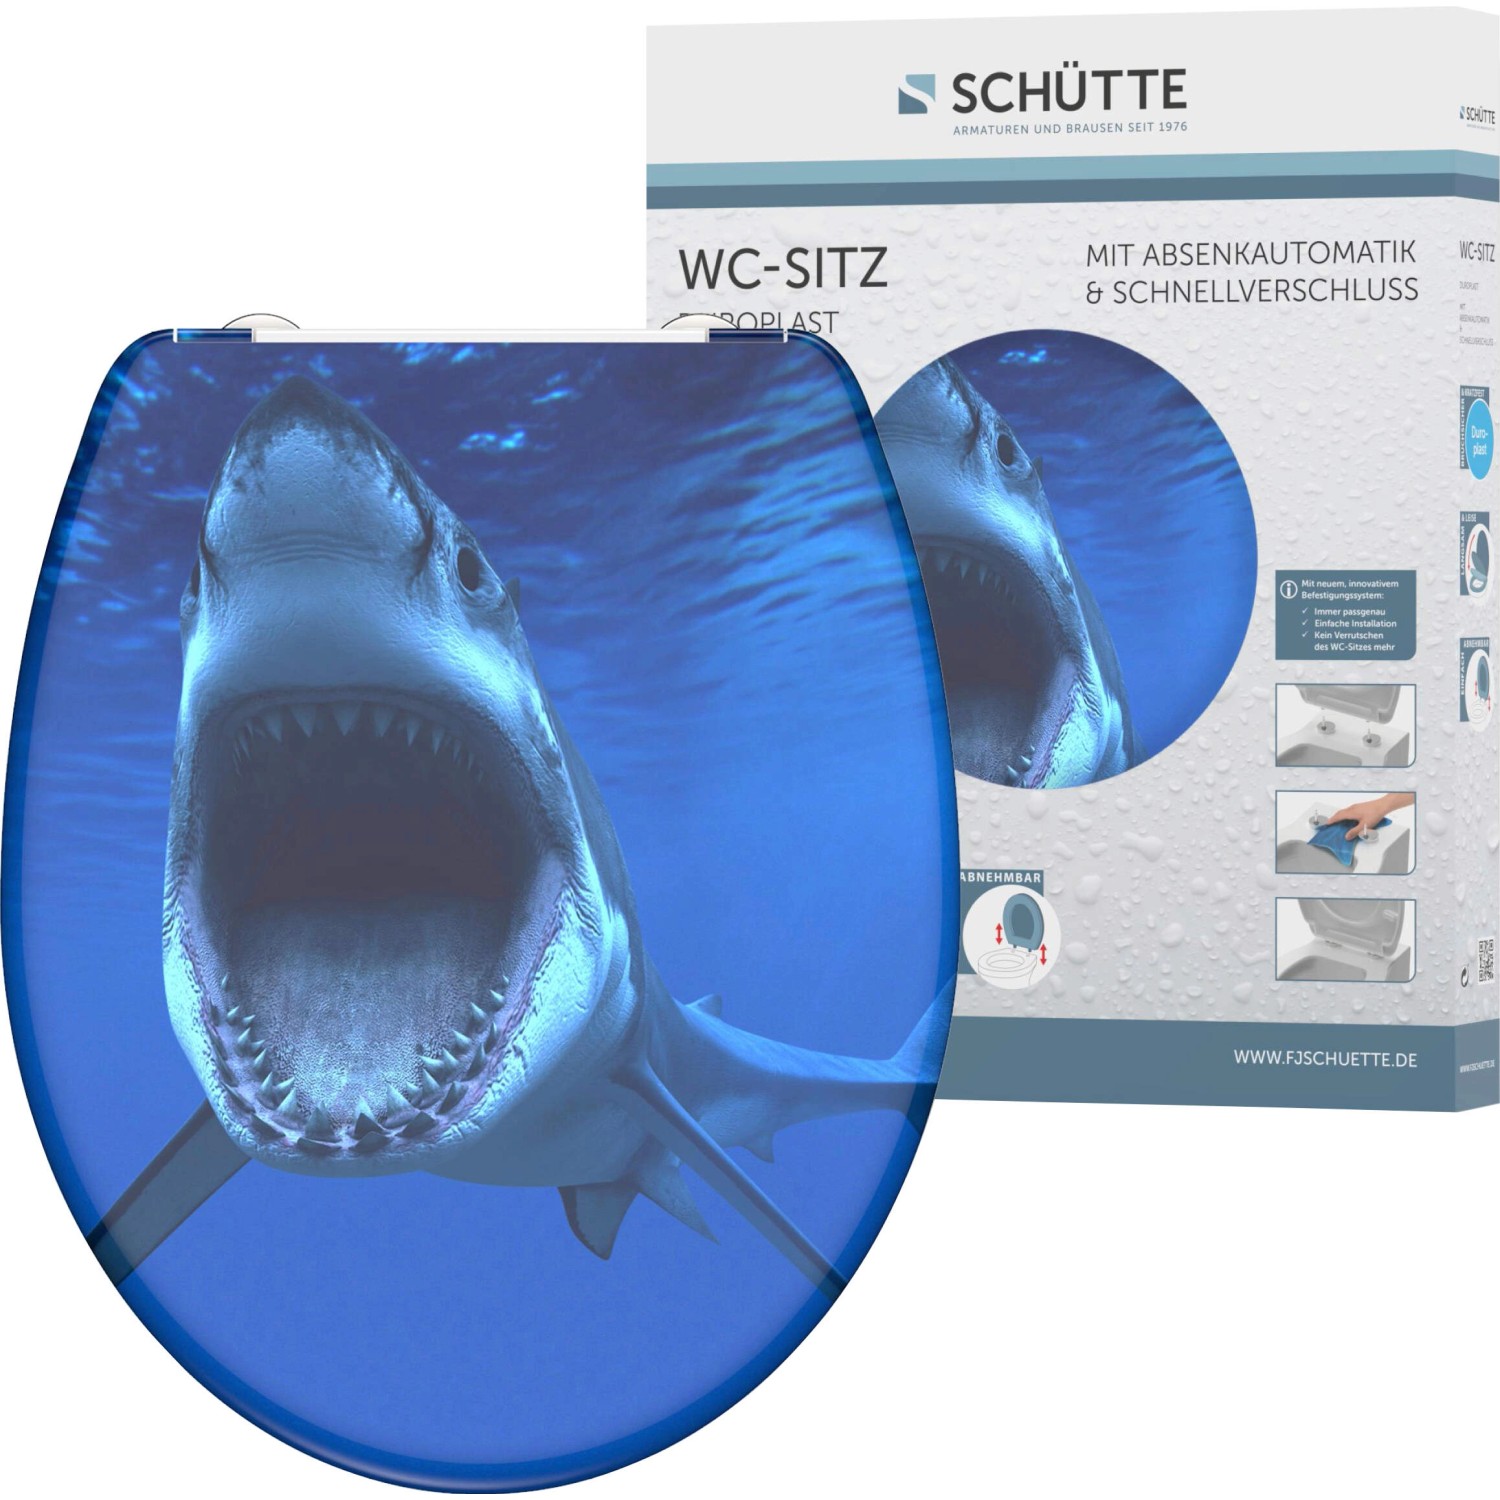 Schütte WC-Sitz Shark Duroplast mit Absenkautomatik & Schnellverschluss von Schütte